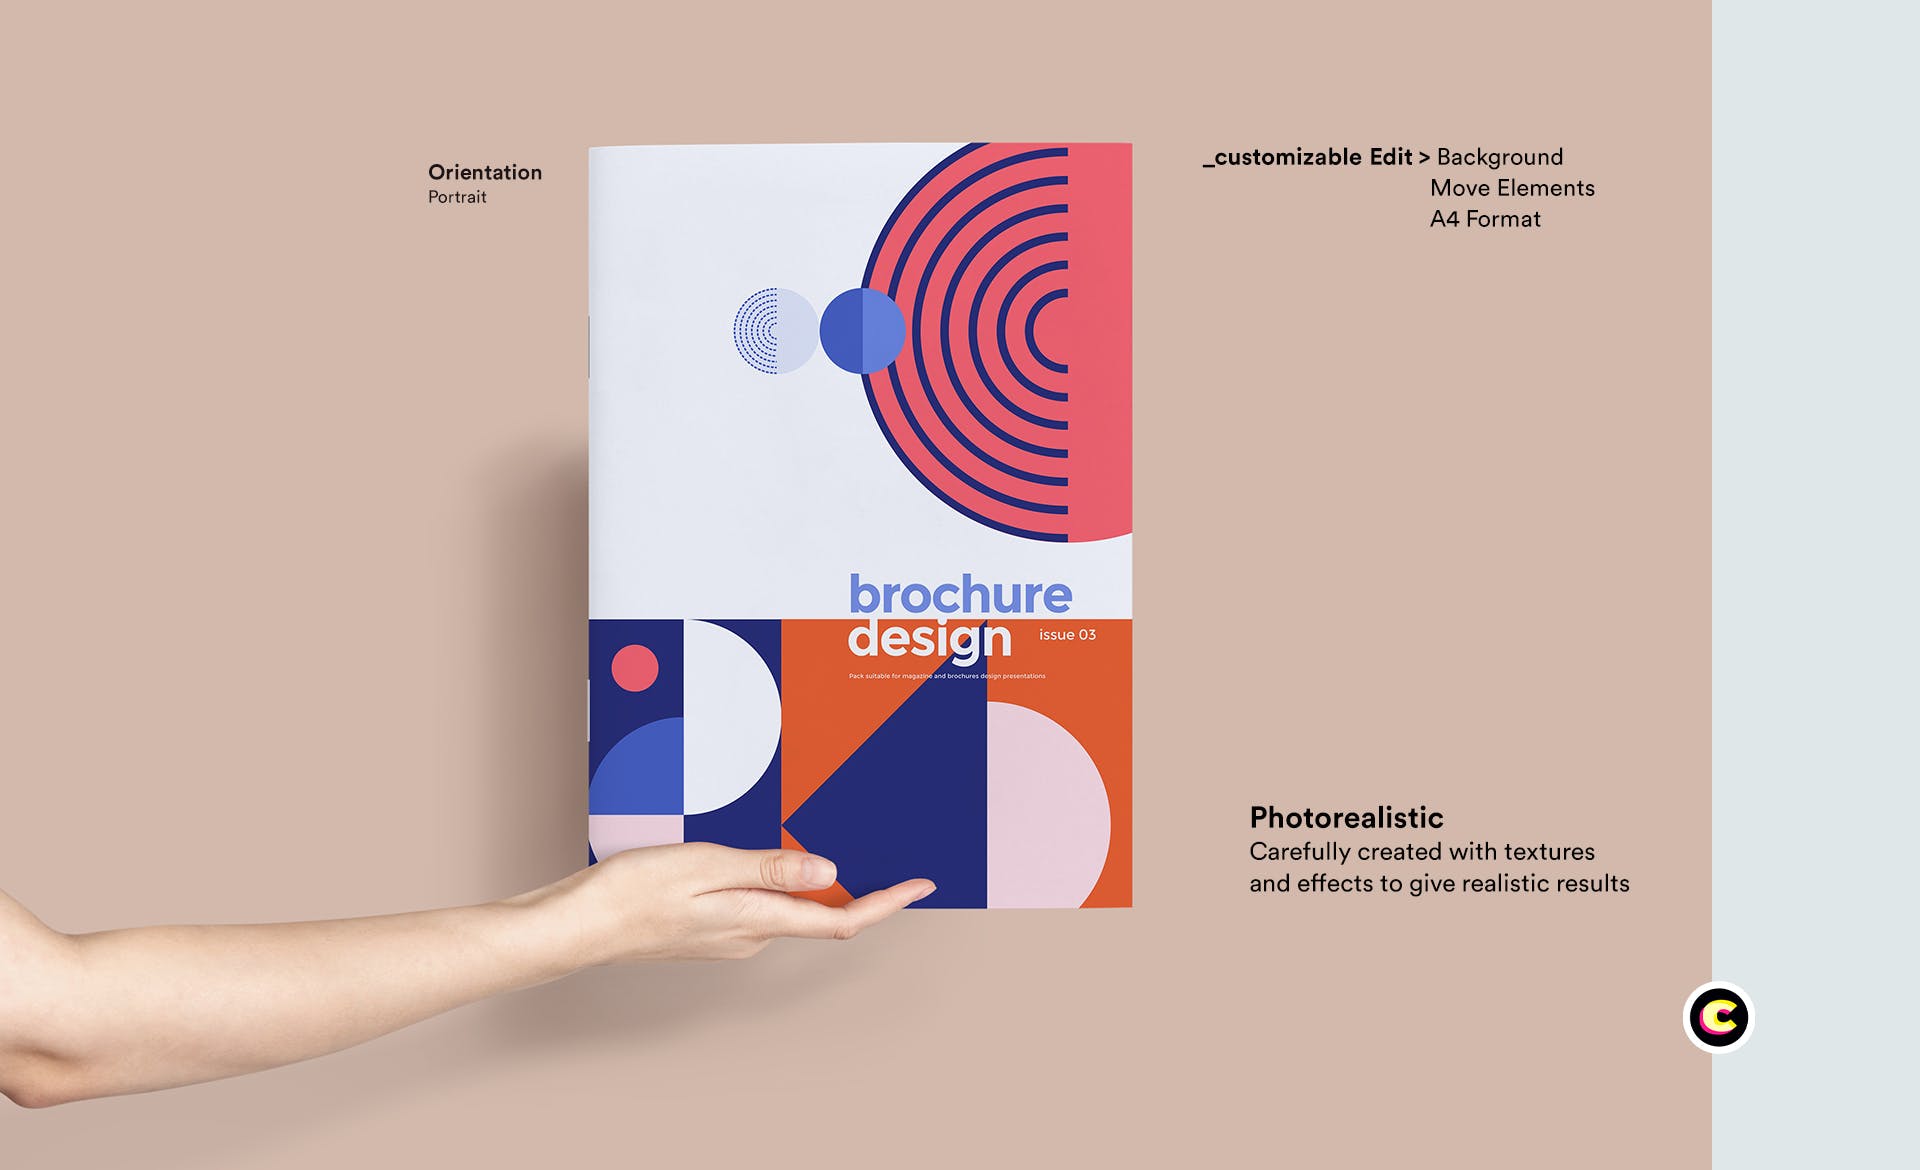 企业品牌画册/宣传册封面设计效果图样机蚂蚁素材精选 Brochure Mockup插图(1)